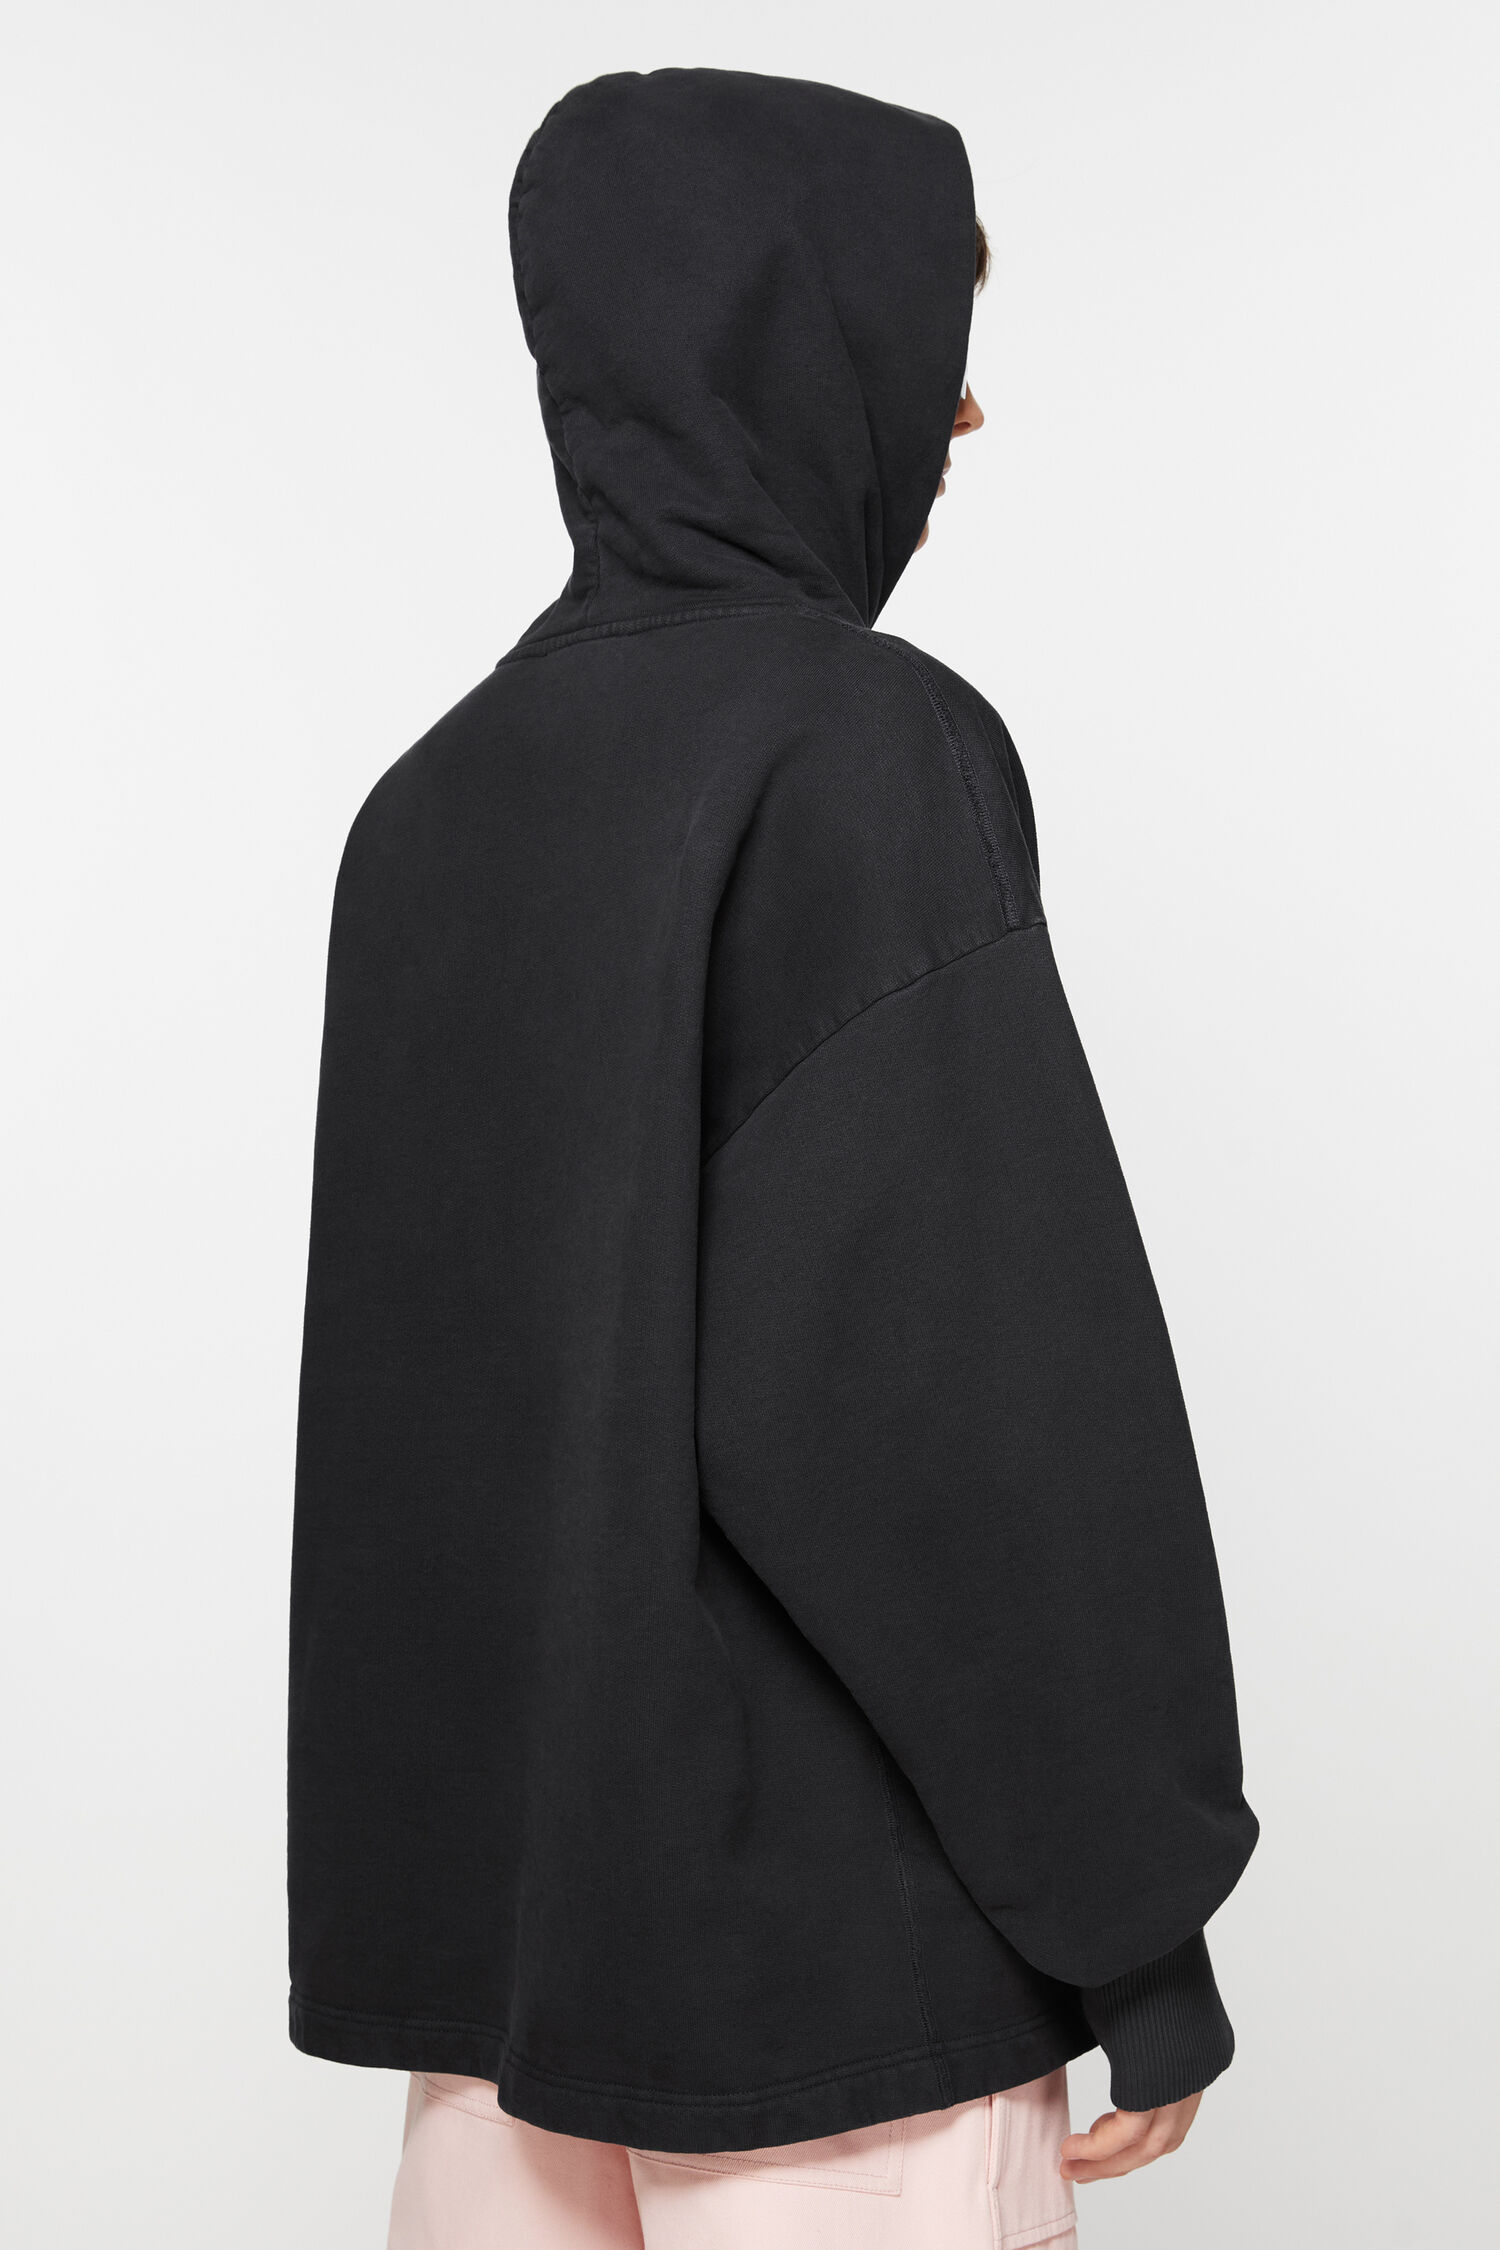 Acne Studios - Logo hoodie - Black